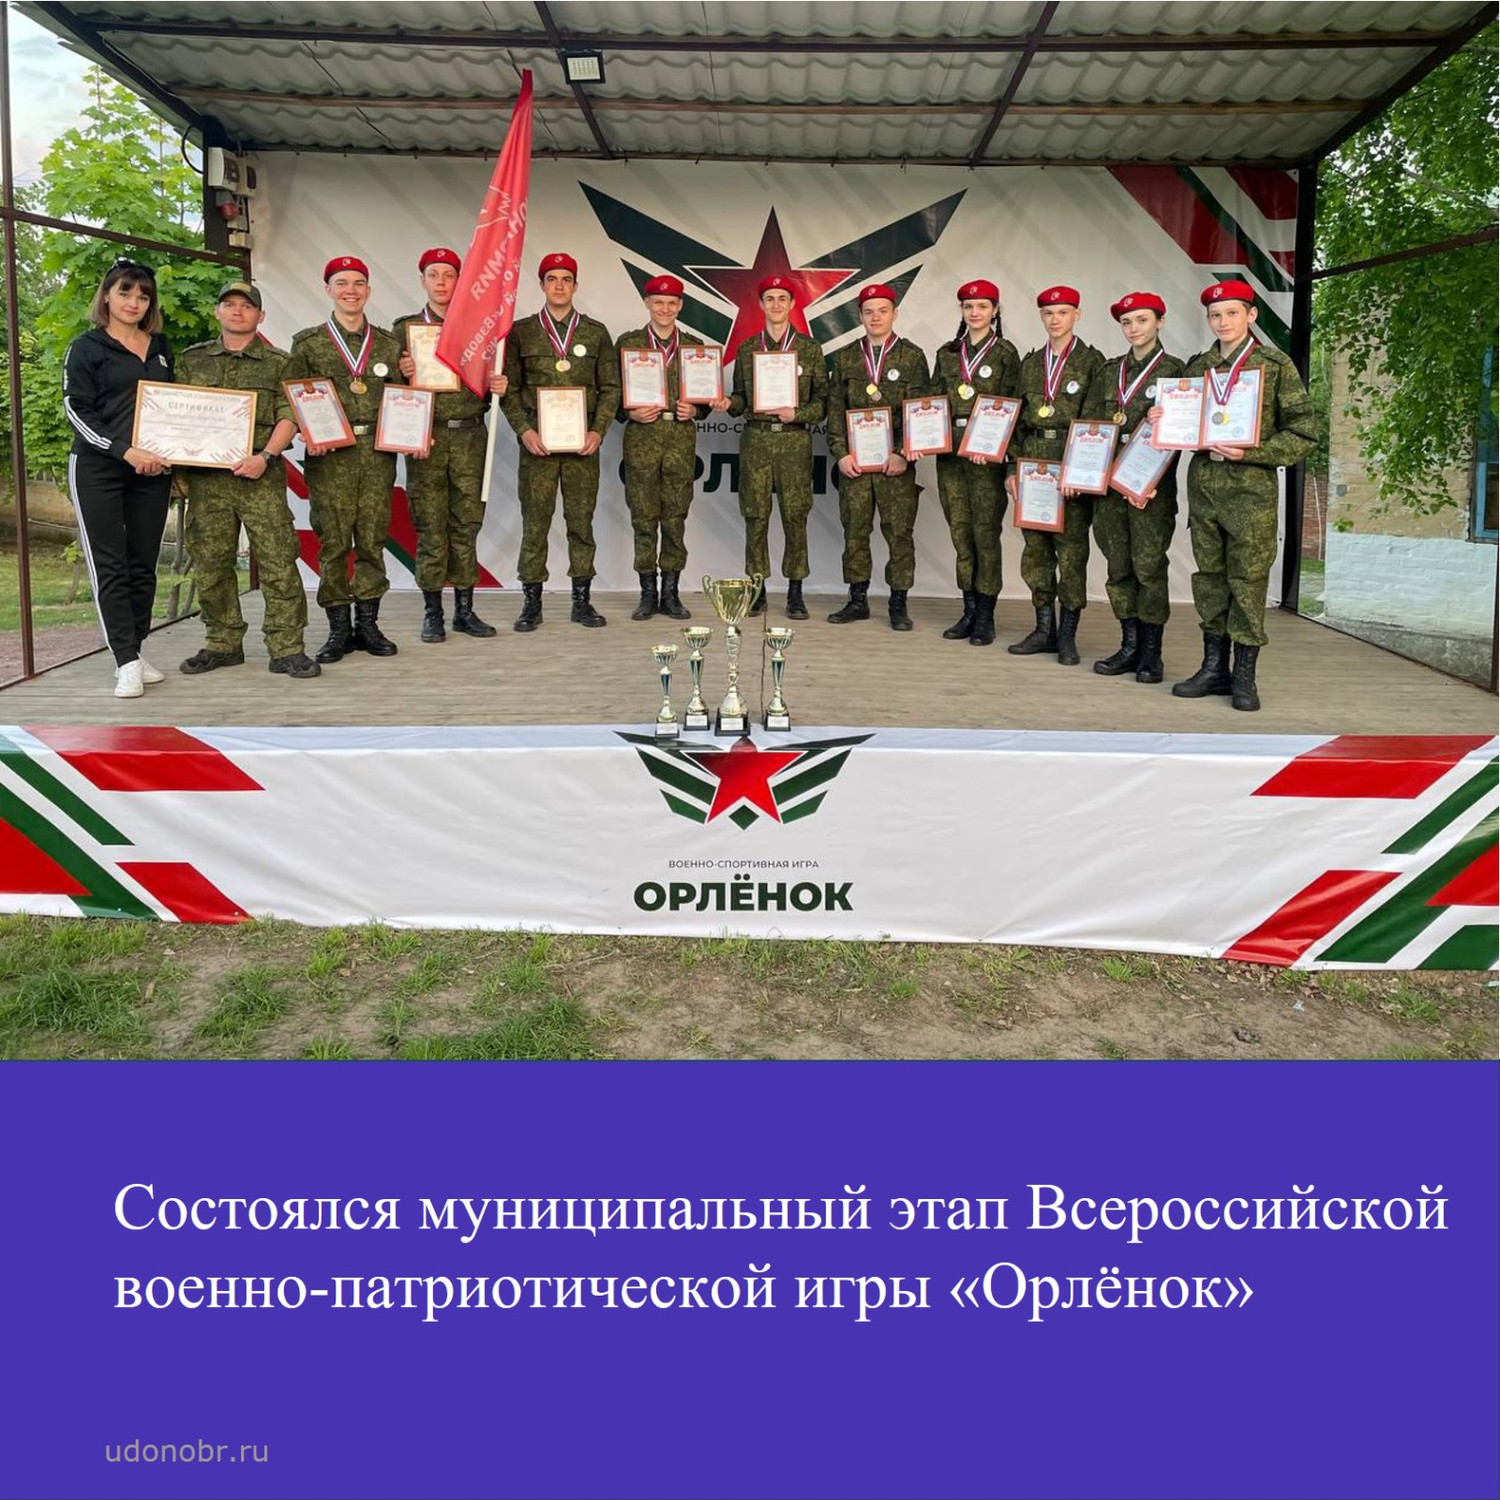 Состоялся муниципальный этап Всероссийской военно-патриотической игры 